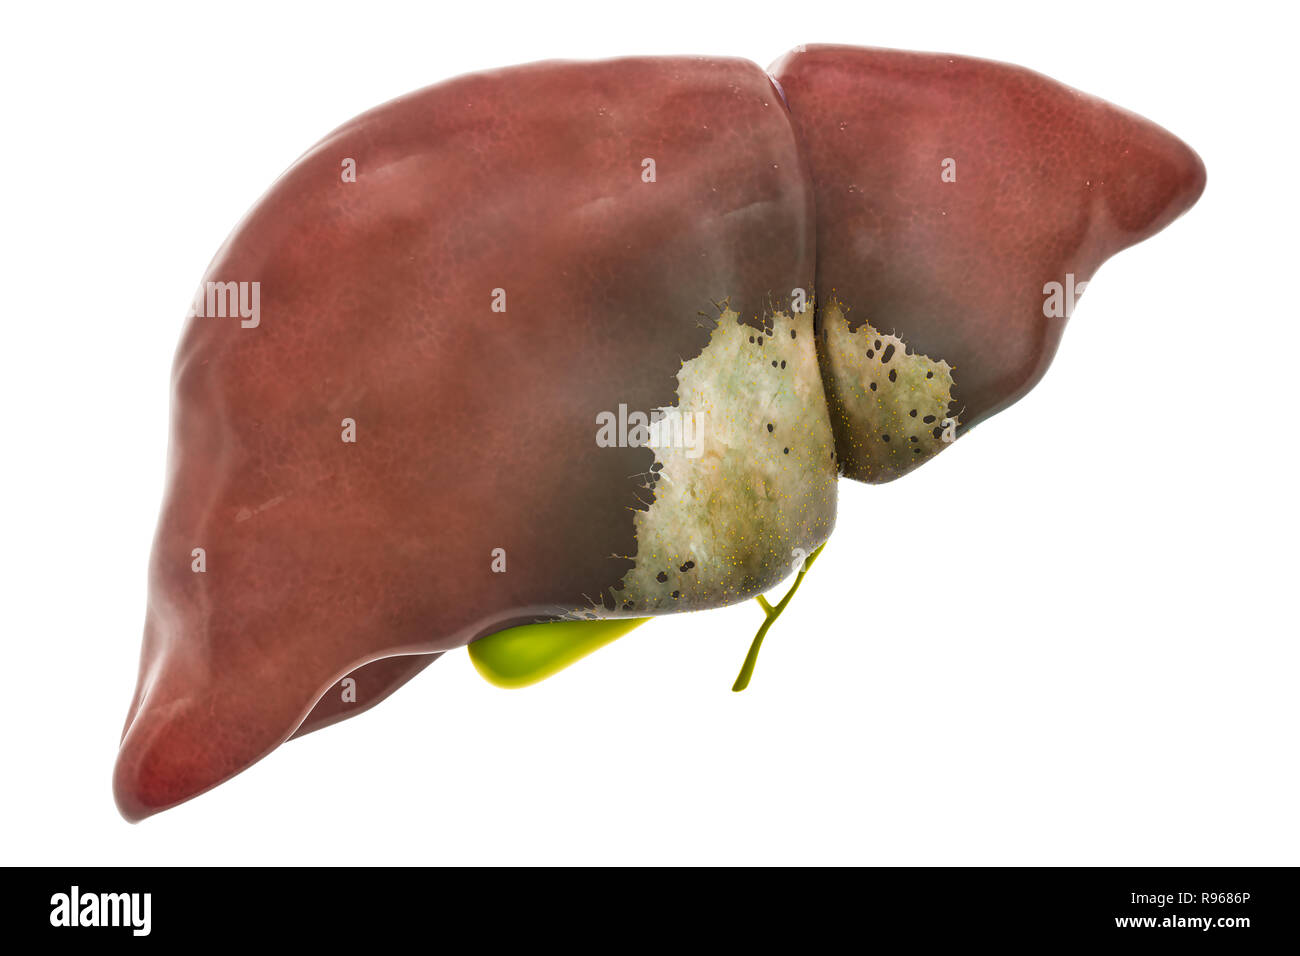 Leber- oder Erkrankung der Gallenblase Konzept, 3D-Rendering auf weißem Hintergrund Stockfoto